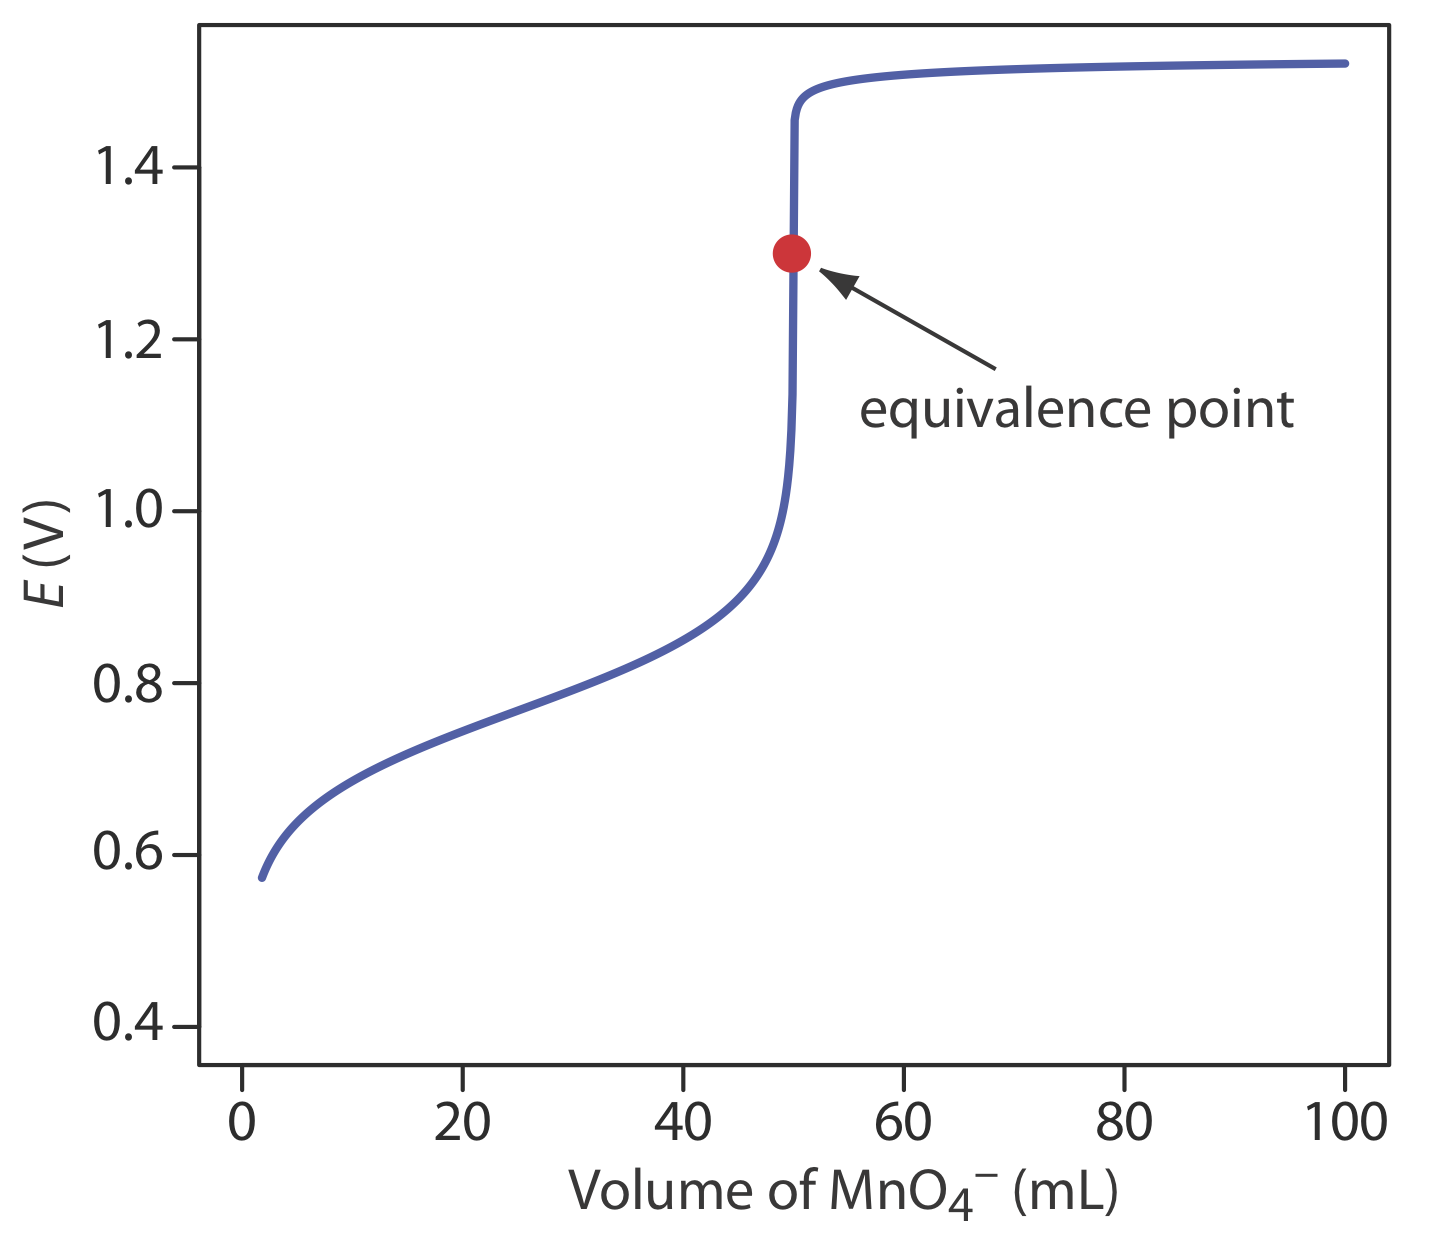 El punto de equivalencia de la curva de titulación mostrada está en aproximadamente 45 mL de (MnO4) - a un valor de 1.3 E (V).